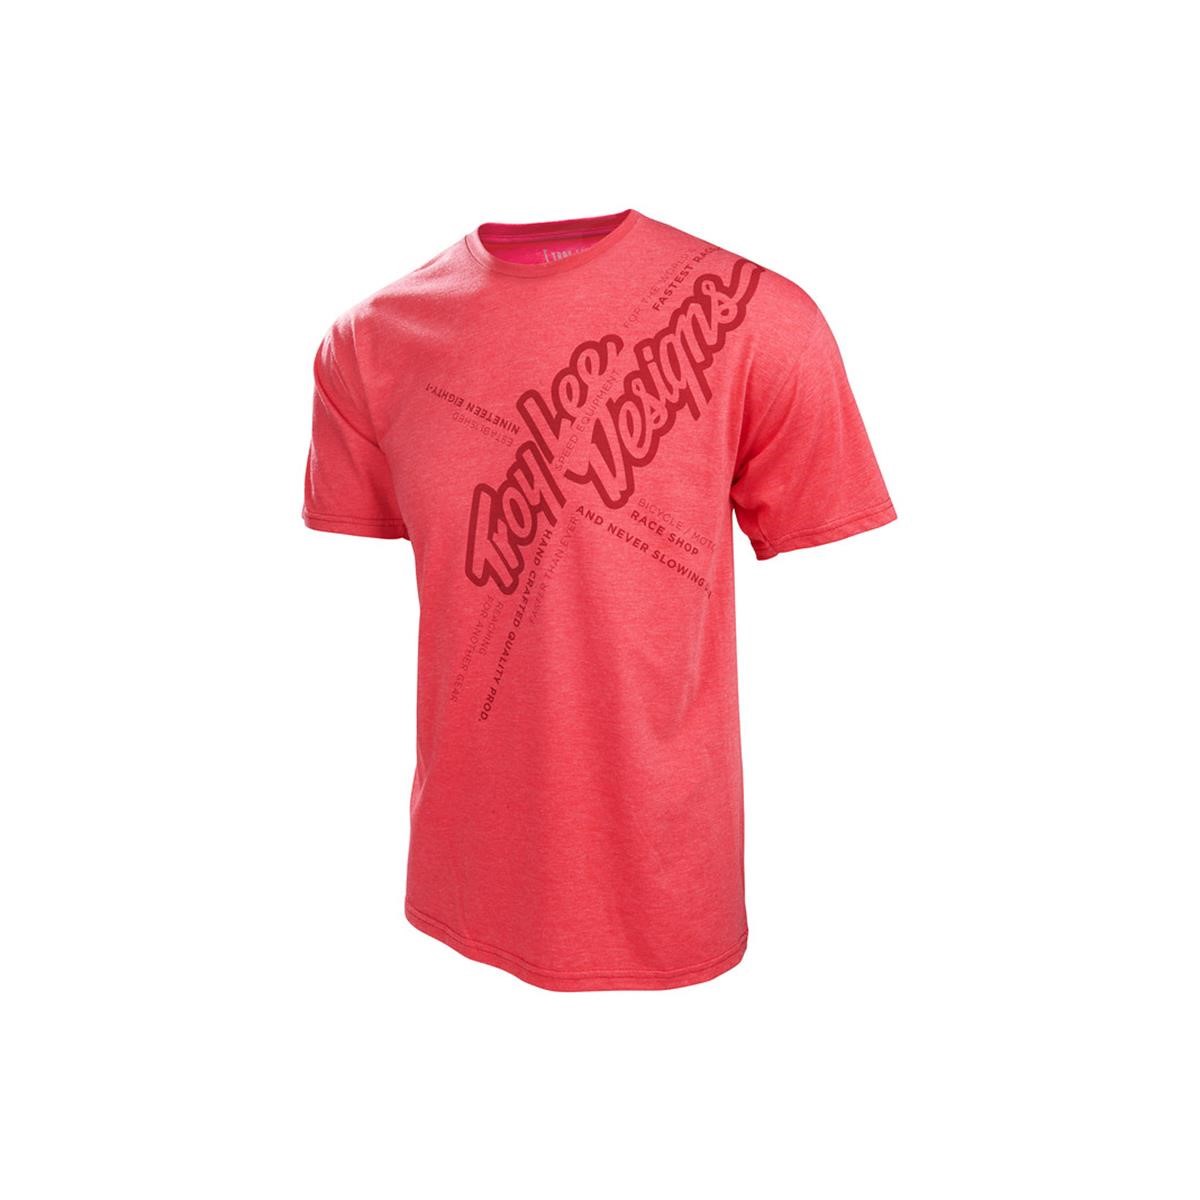 Troy Lee Designs T-Shirt Vert Rot meliert